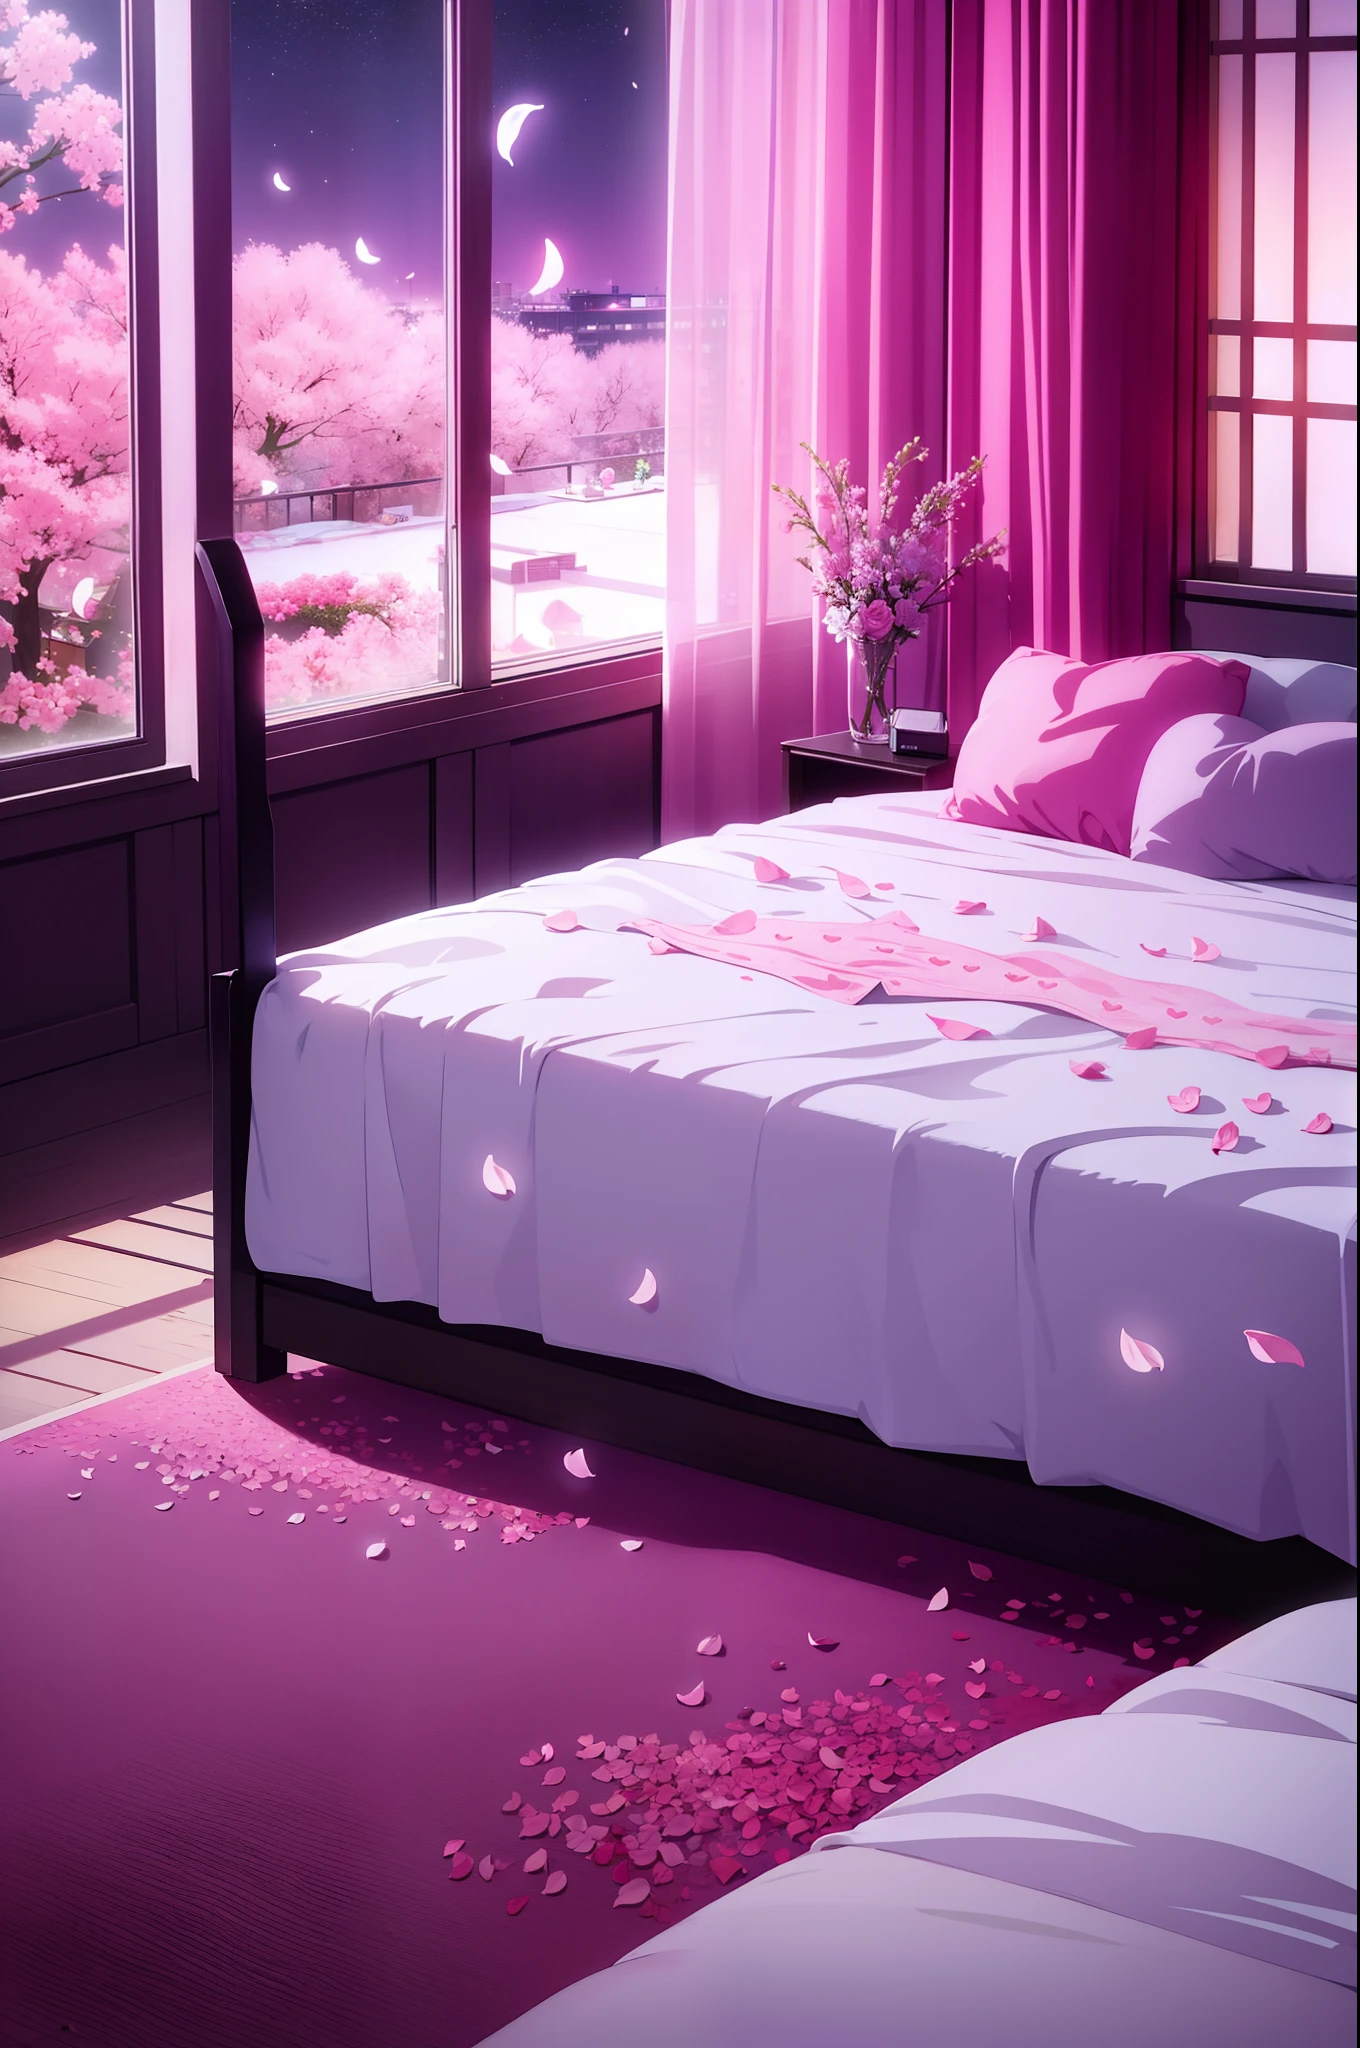 منظر حسي للغرفة مع بتلات الزهور المتناثرة على السرير, سرير على شكل قلب, سماء الليل على النوافذ, الضوء الوردي, أحب فندق, كيس الواقي الذكري, سرير مبلل